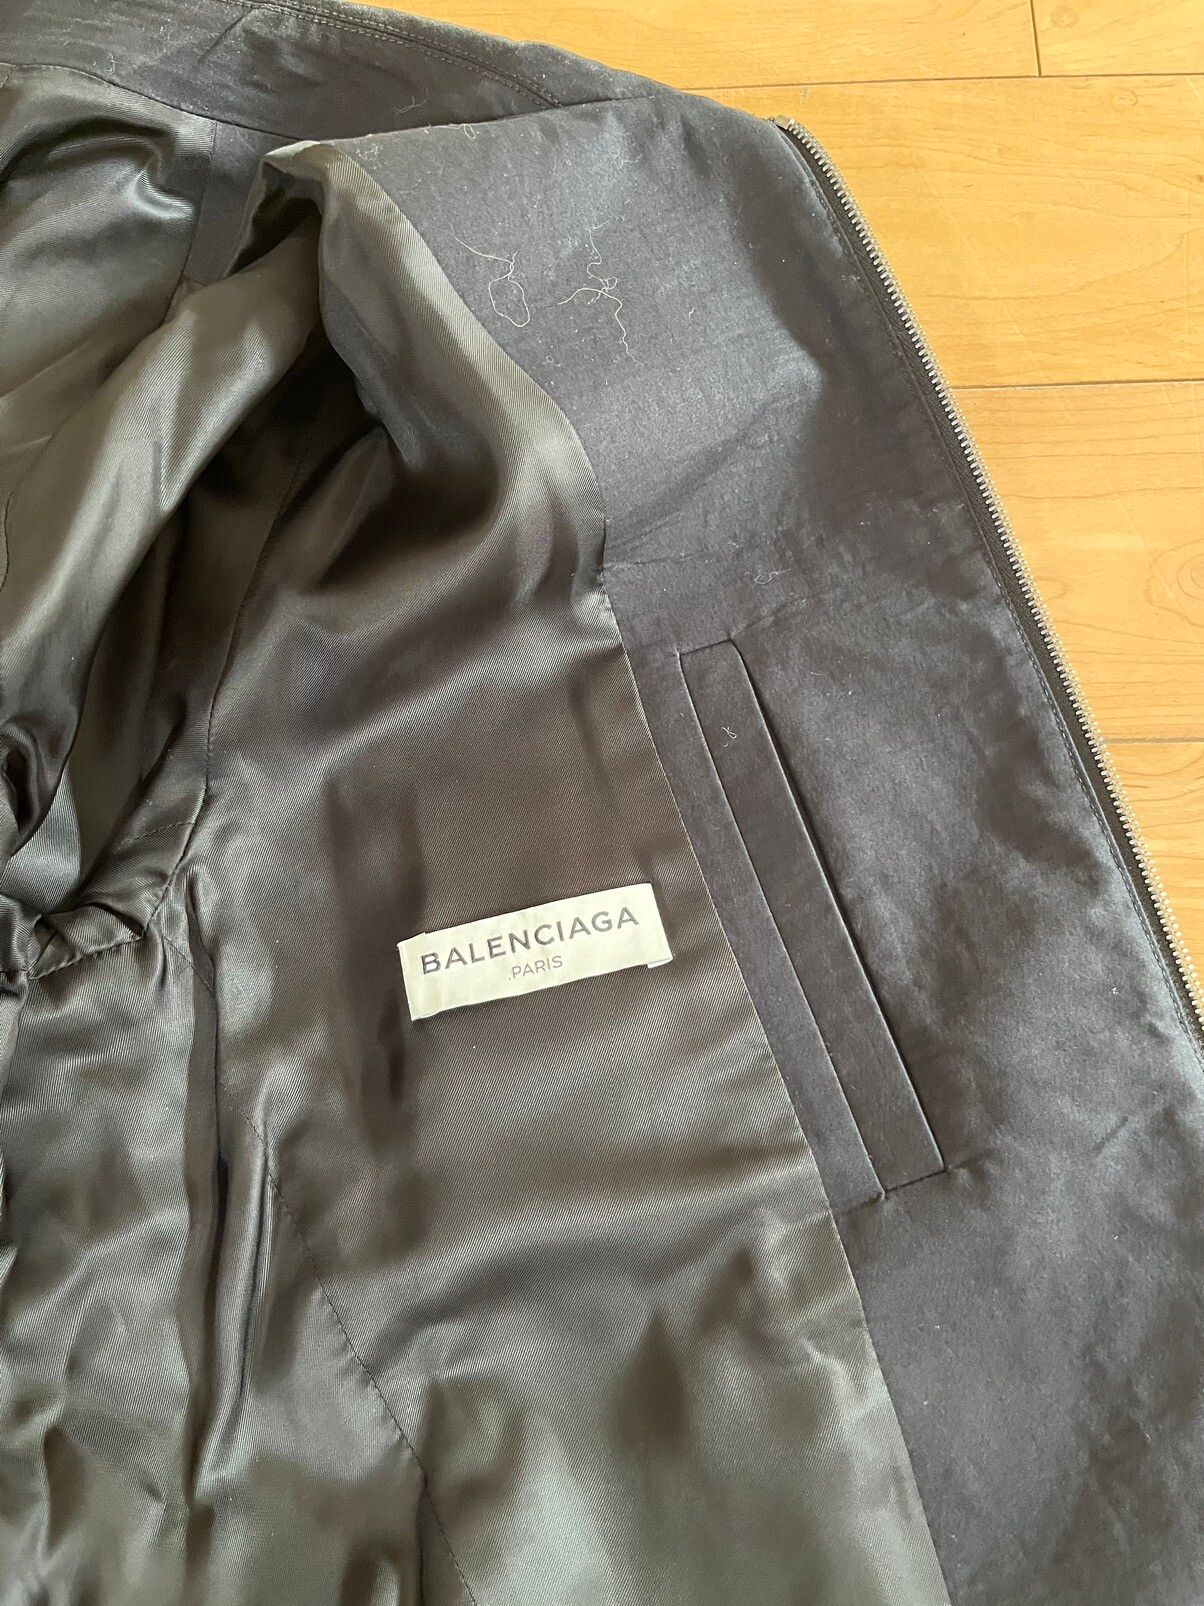 NWT - Balenciaga Work Jacket - 7